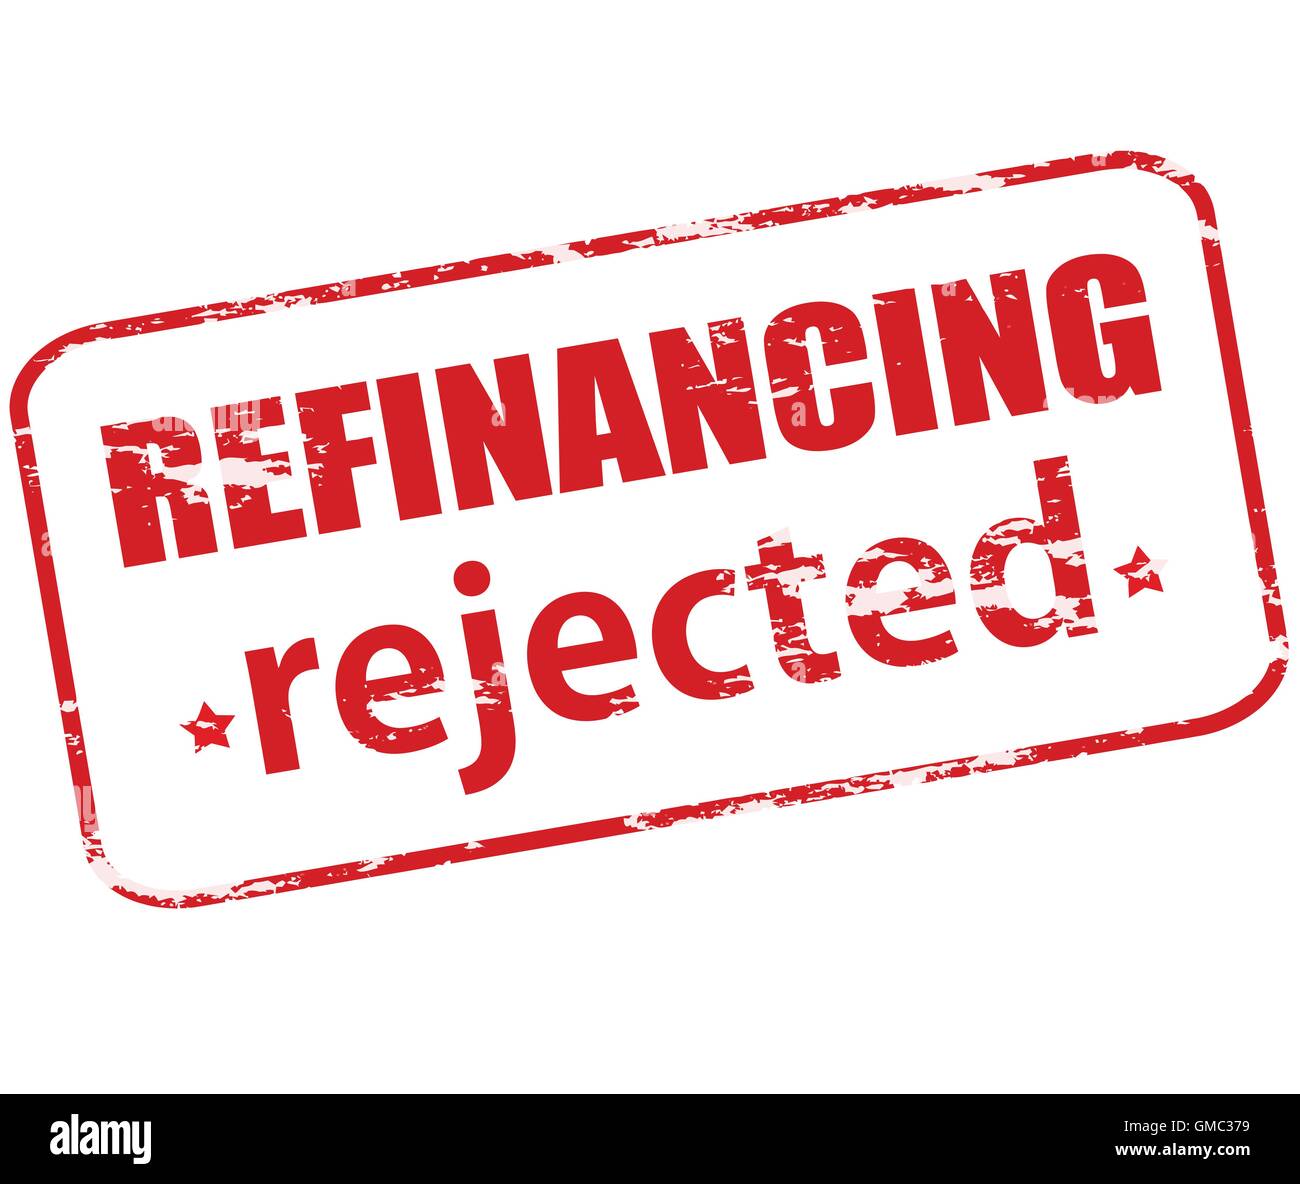 Refinancing rejected Stock Vector